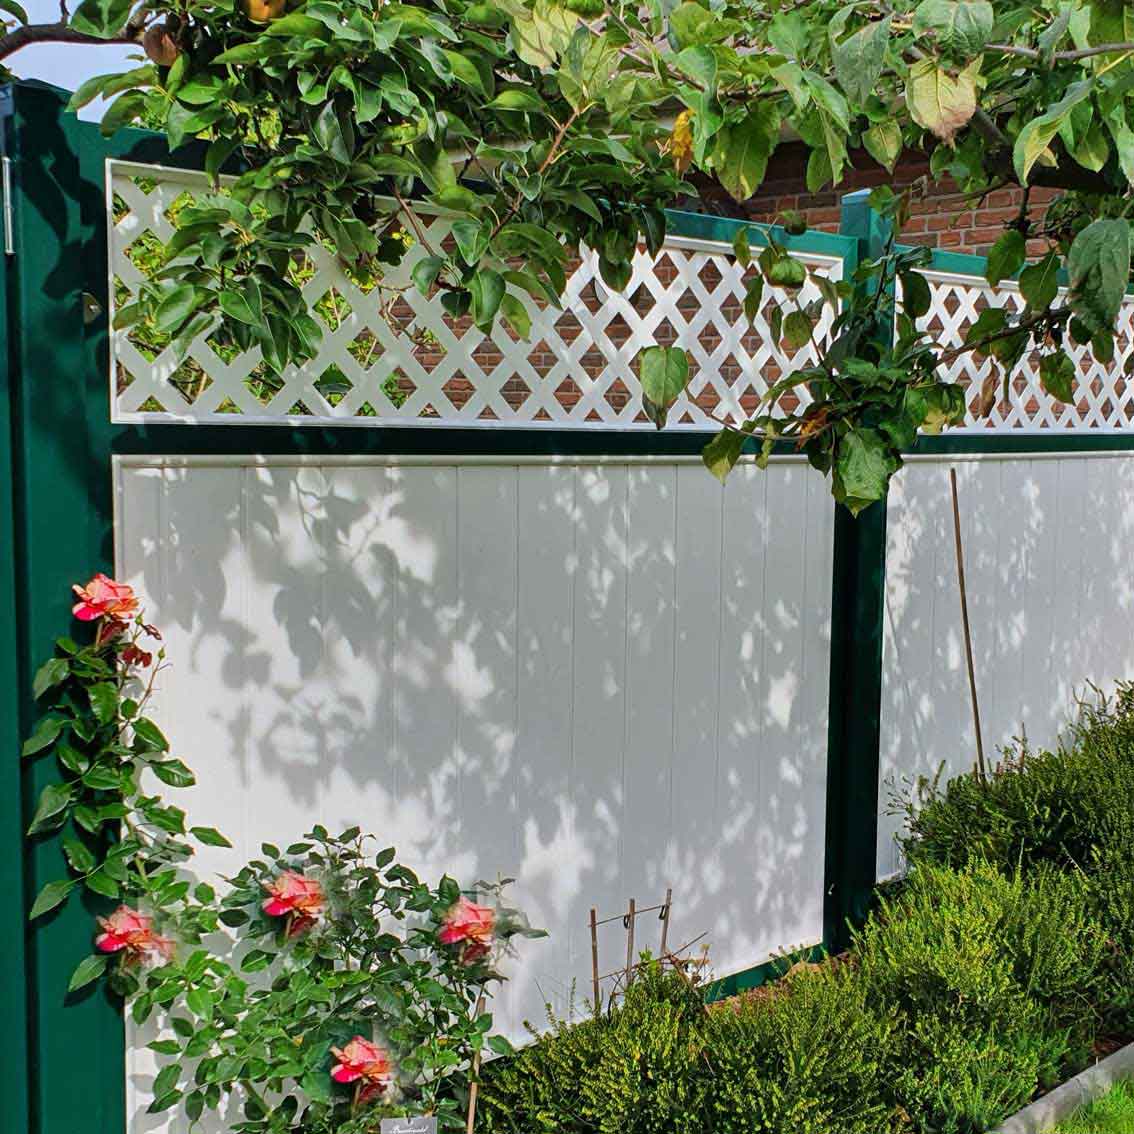 Sichtschutzzaun auf Terrasse aus Kunststoff in der Farbkombination Holzoptik Nussbaum Anthrazit